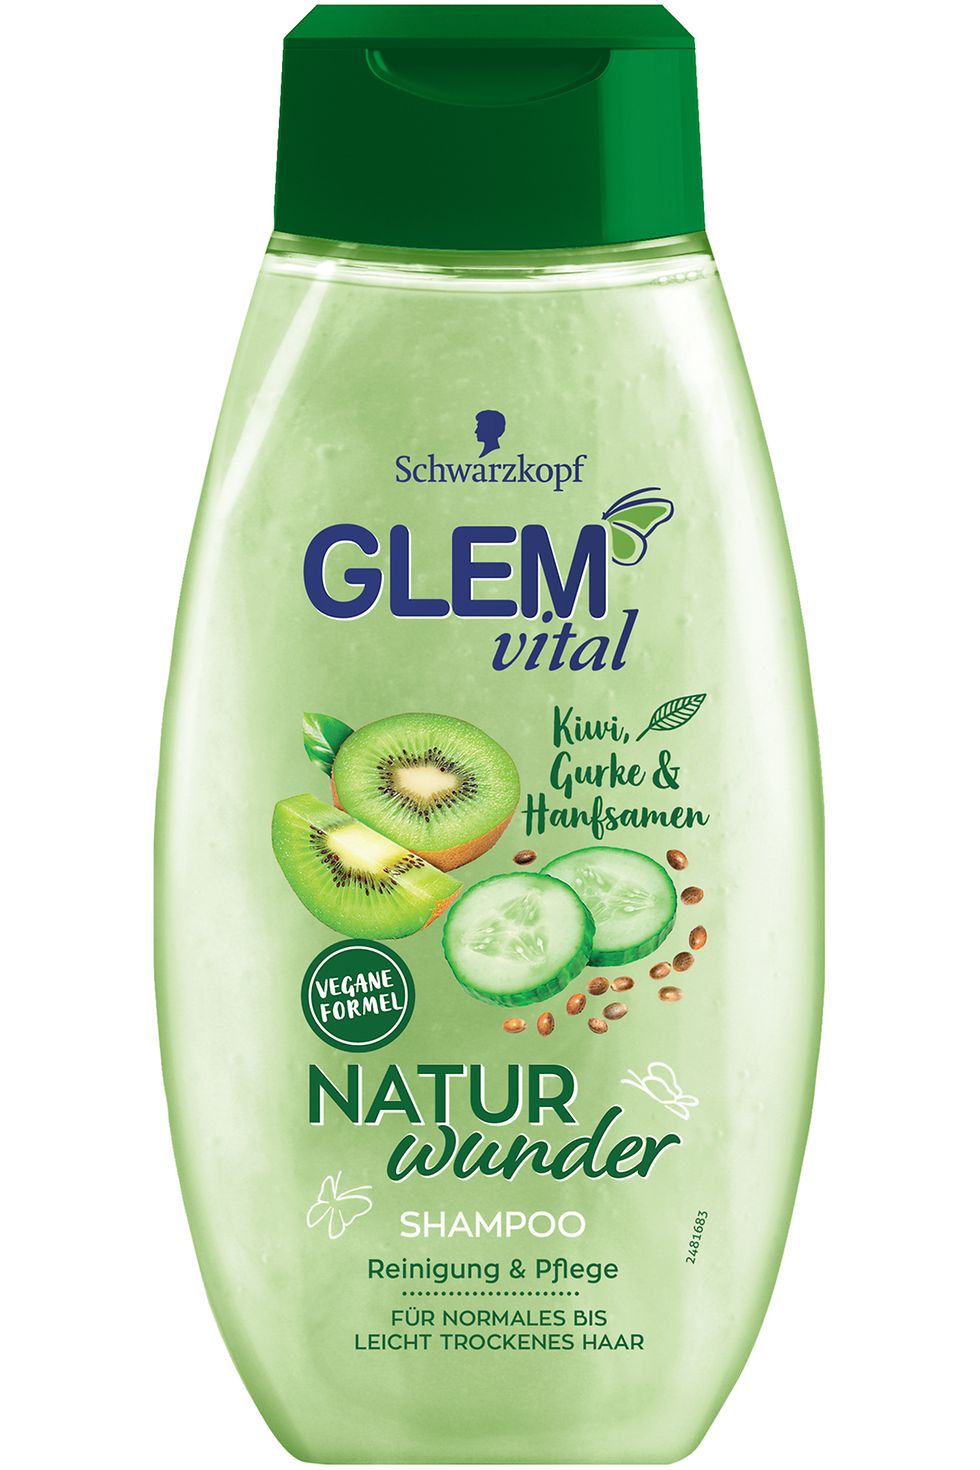 Glem vital Naturwunder Kiwi, Gurke & Hanfsamen Shampoo